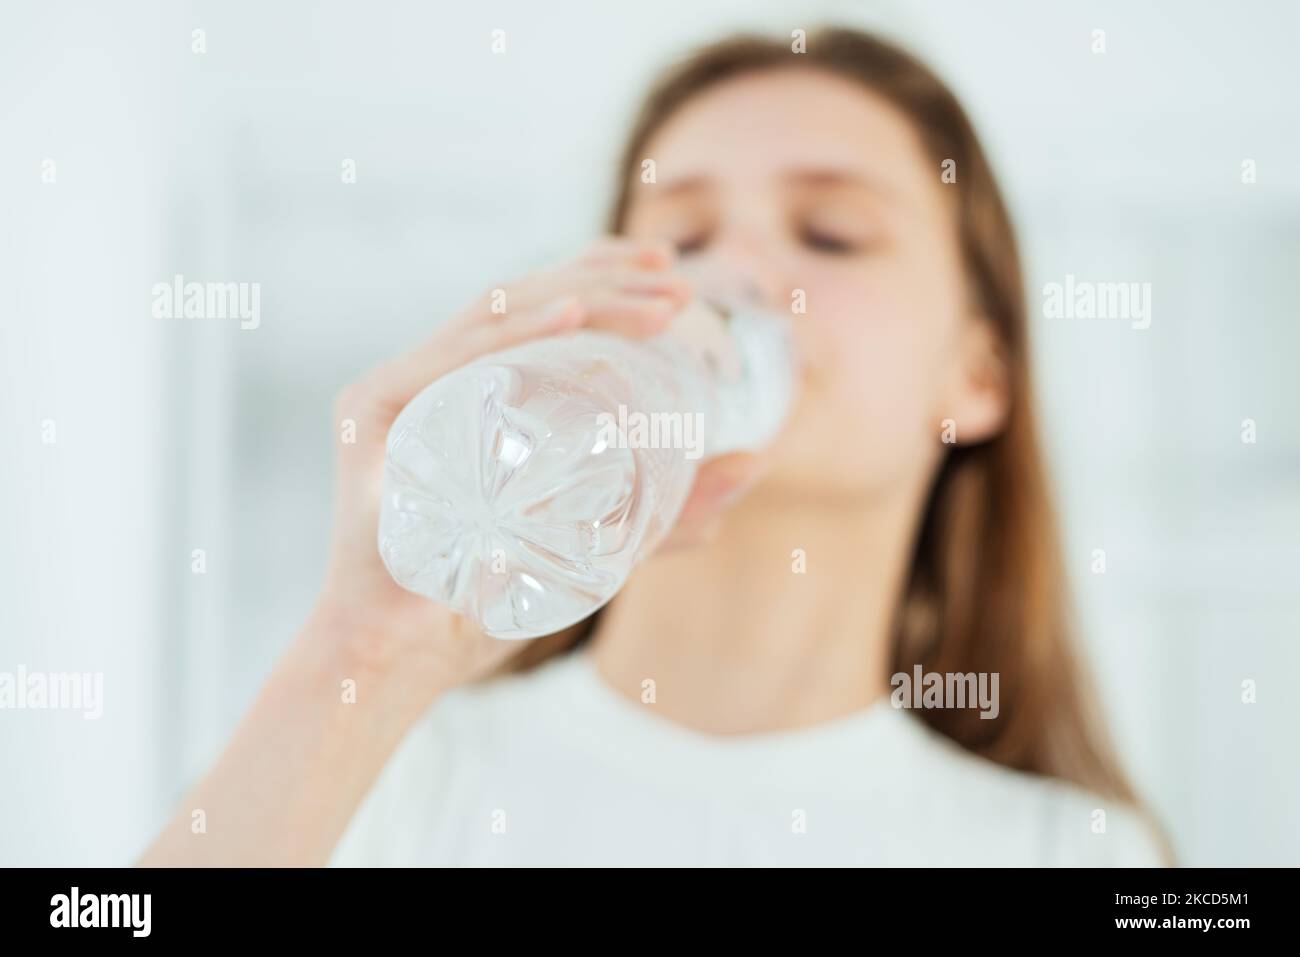 Une jeune femme adorable boit de l'eau dans une bouteille en plastique en gros plan, un mode de vie sain Banque D'Images